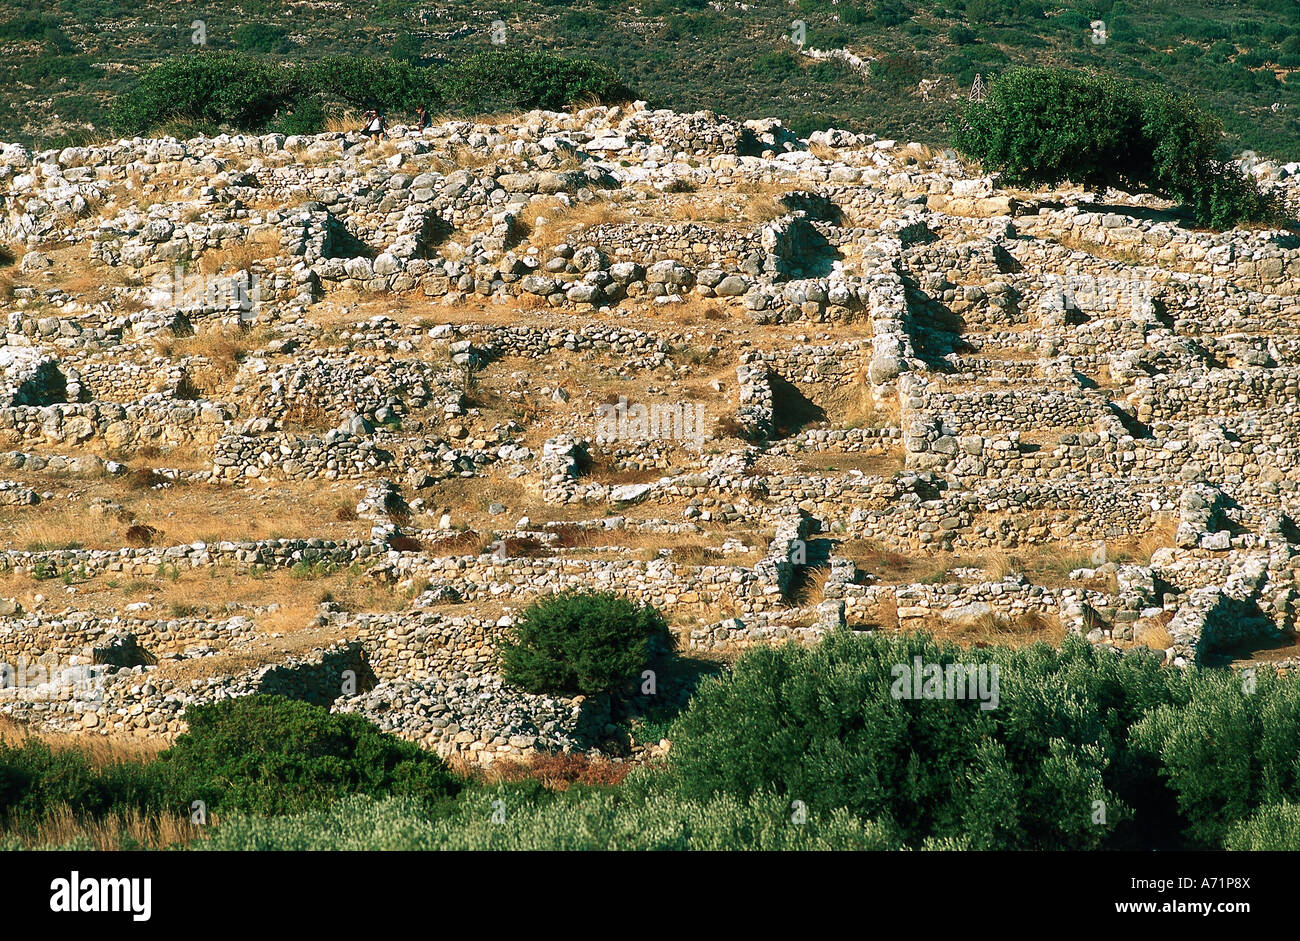 Geographie / Reisen, Griechenland, Kreta, Gournia, minoische Stadt, ca. 17. Jahrhundert v. Chr., archäologische Ausgrabungen, Ruinen der Häuser, eine Stockfoto